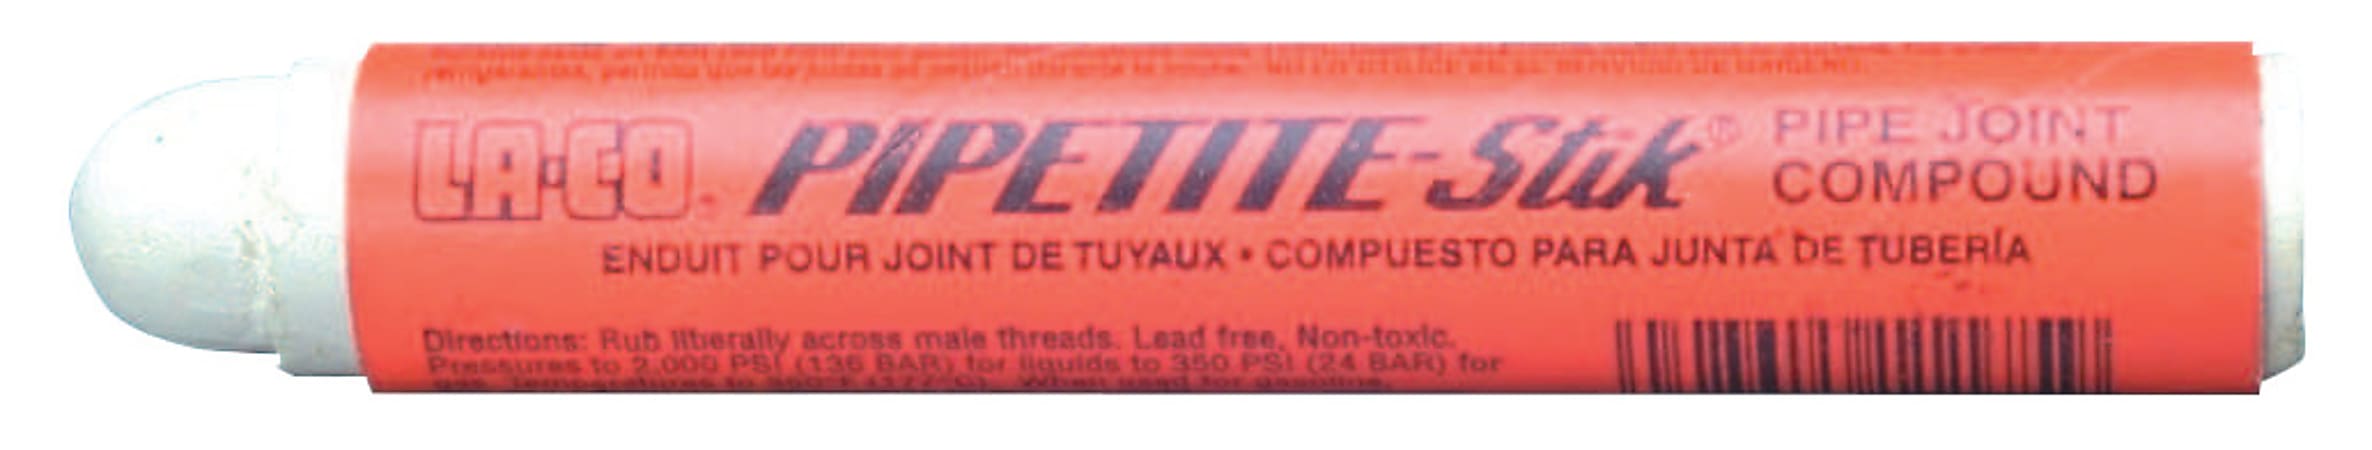 Pipetite-Stik Pipe Thread Compounds, 4 oz Stick, Off-White